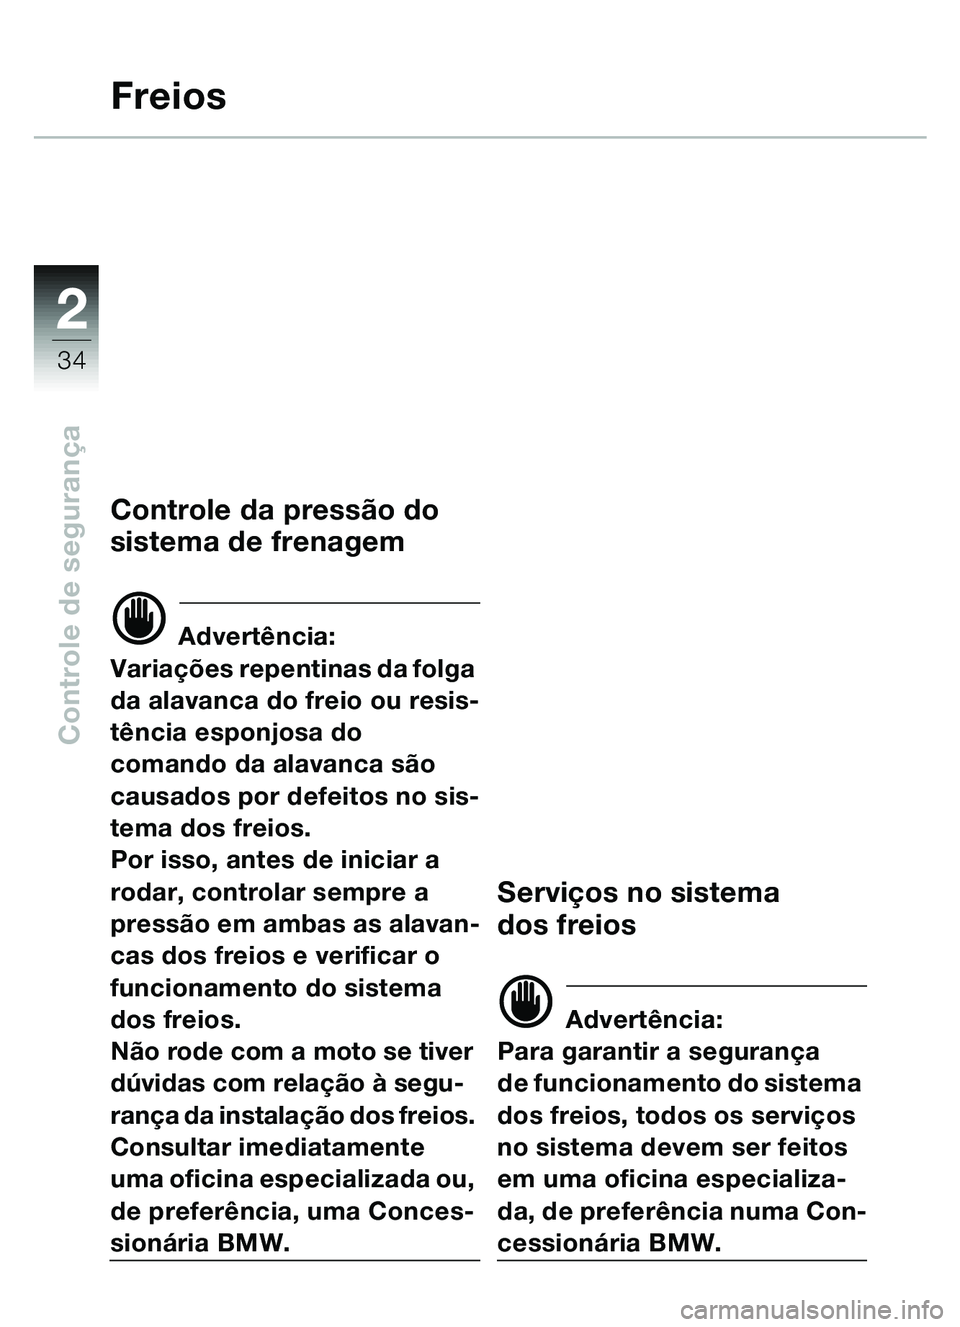 BMW MOTORRAD C1 2000  Manual do condutor (in Portuguese) 2
34
Controle de segurança
Freios
Controle da pressão do 
sistema de frenagem
d Advertência:
Variações repentinas da folga 
da alavanca do freio ou resis-
tência esponjosa do 
comando da alavanc